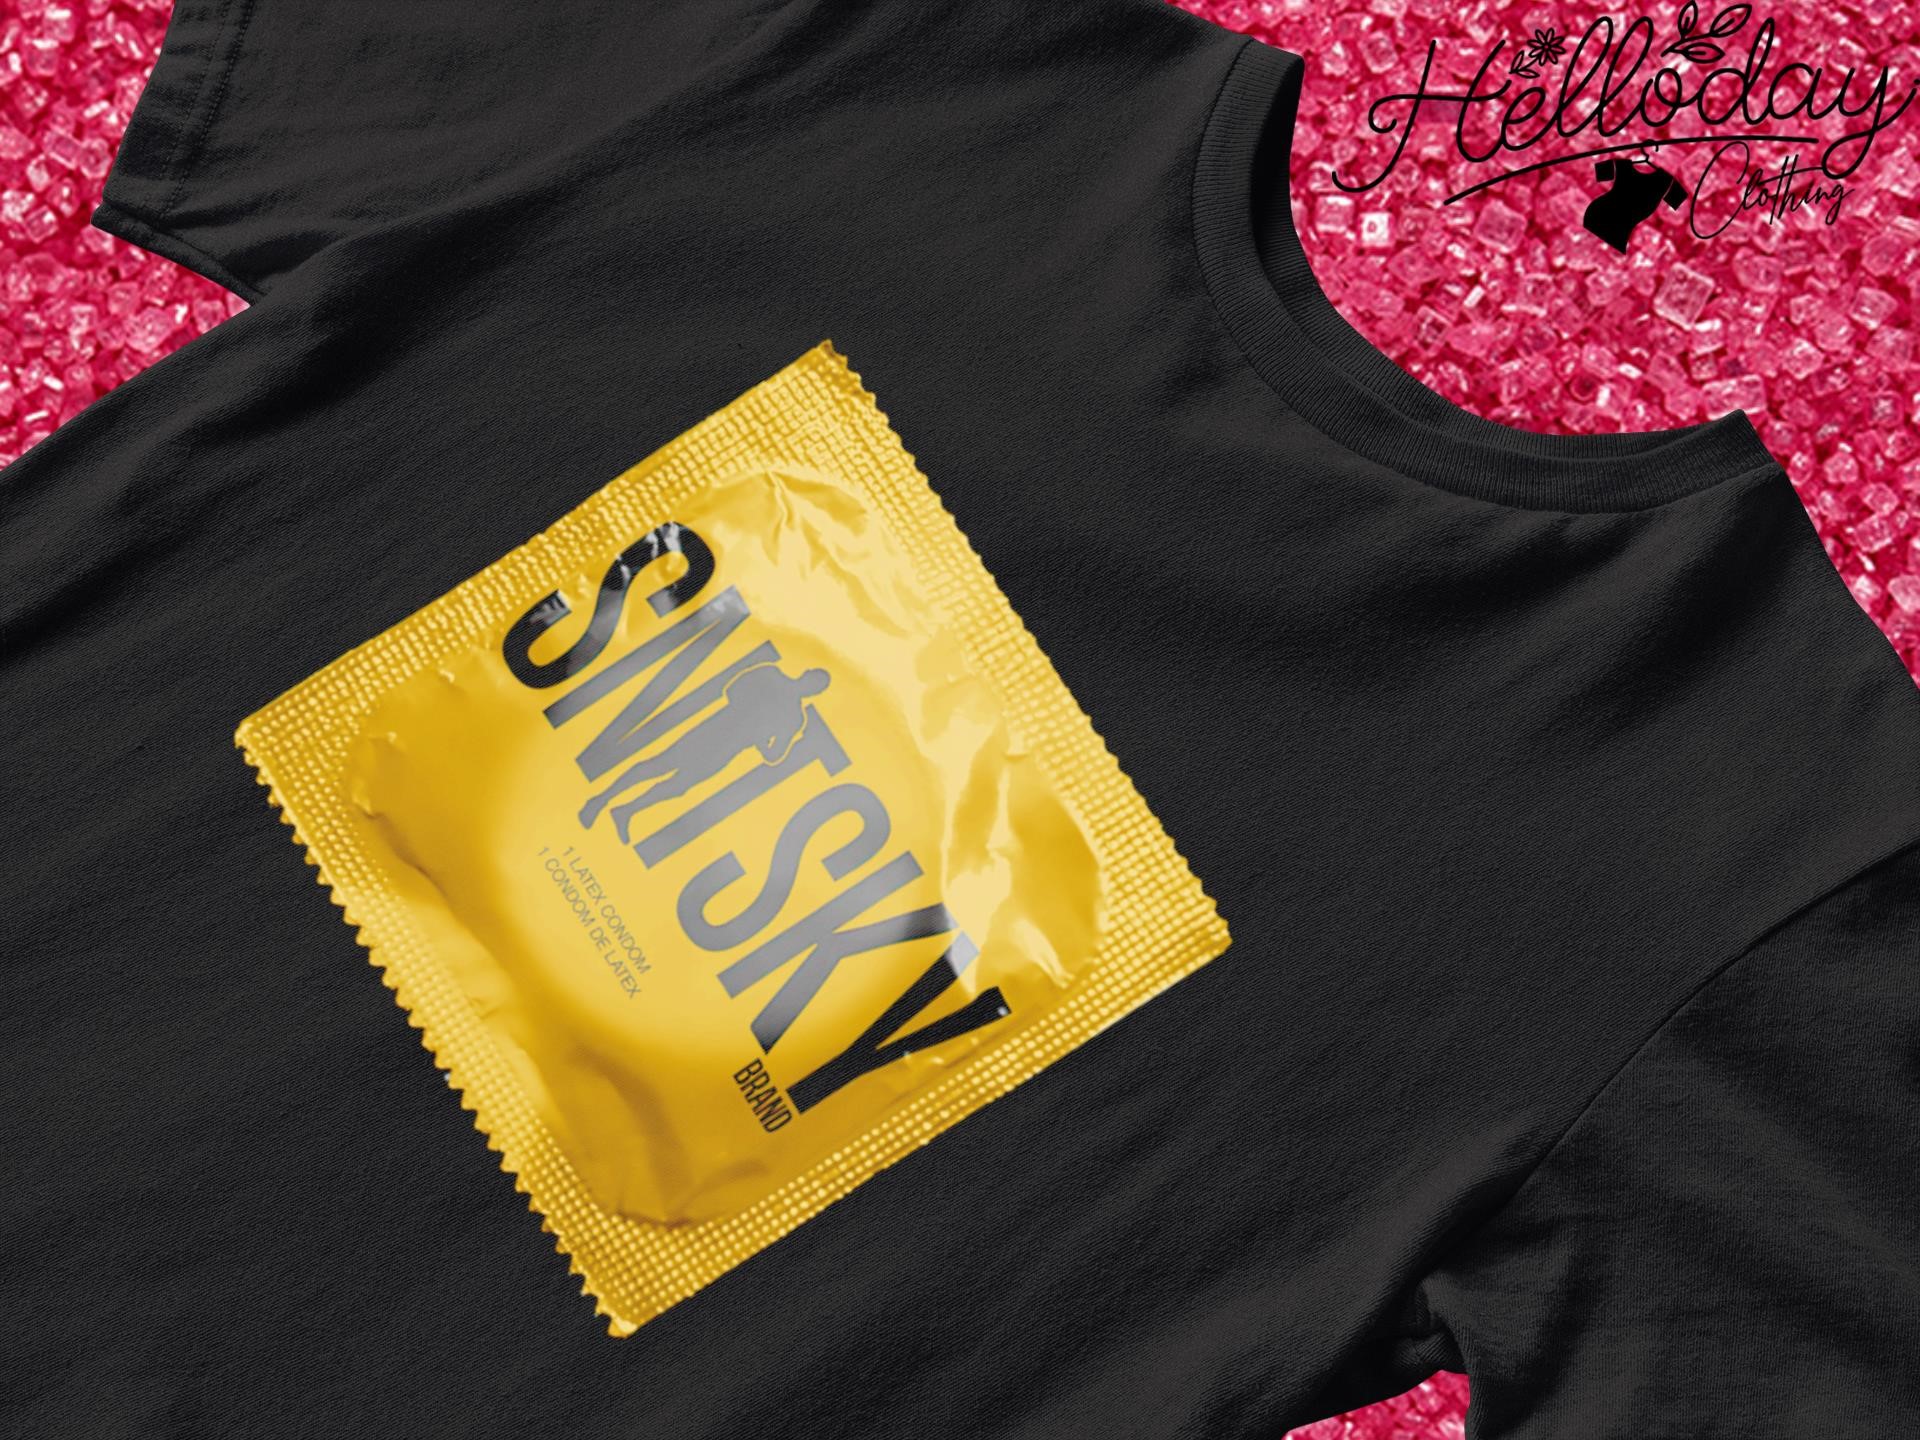 Snitsky Snitsky Condoms shirt